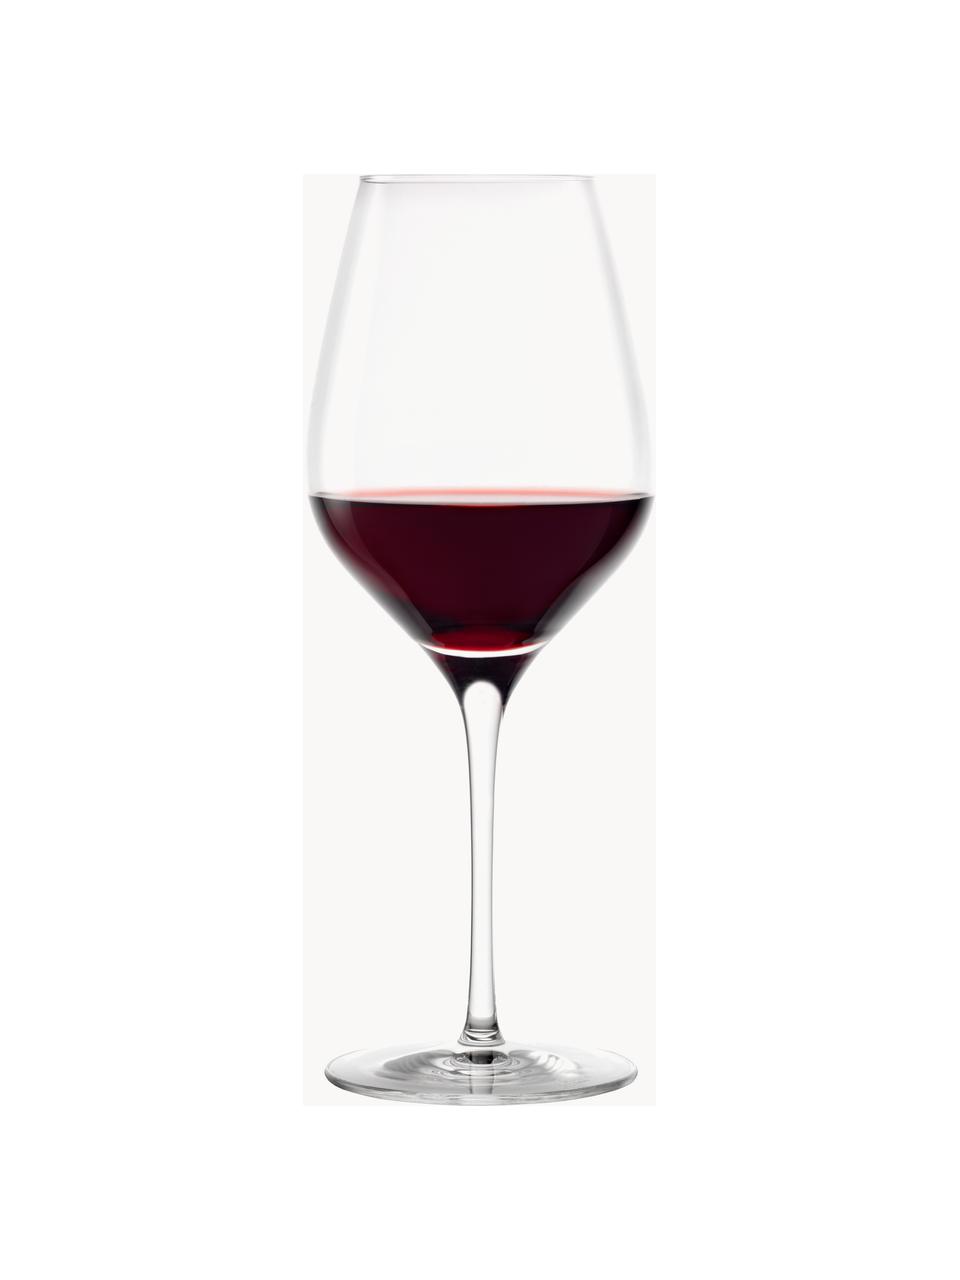 Copas de vino de cristal Exquisit, 6 uds., Cristal, Transparente, Ø 7 x Al 25 cm, 645 ml